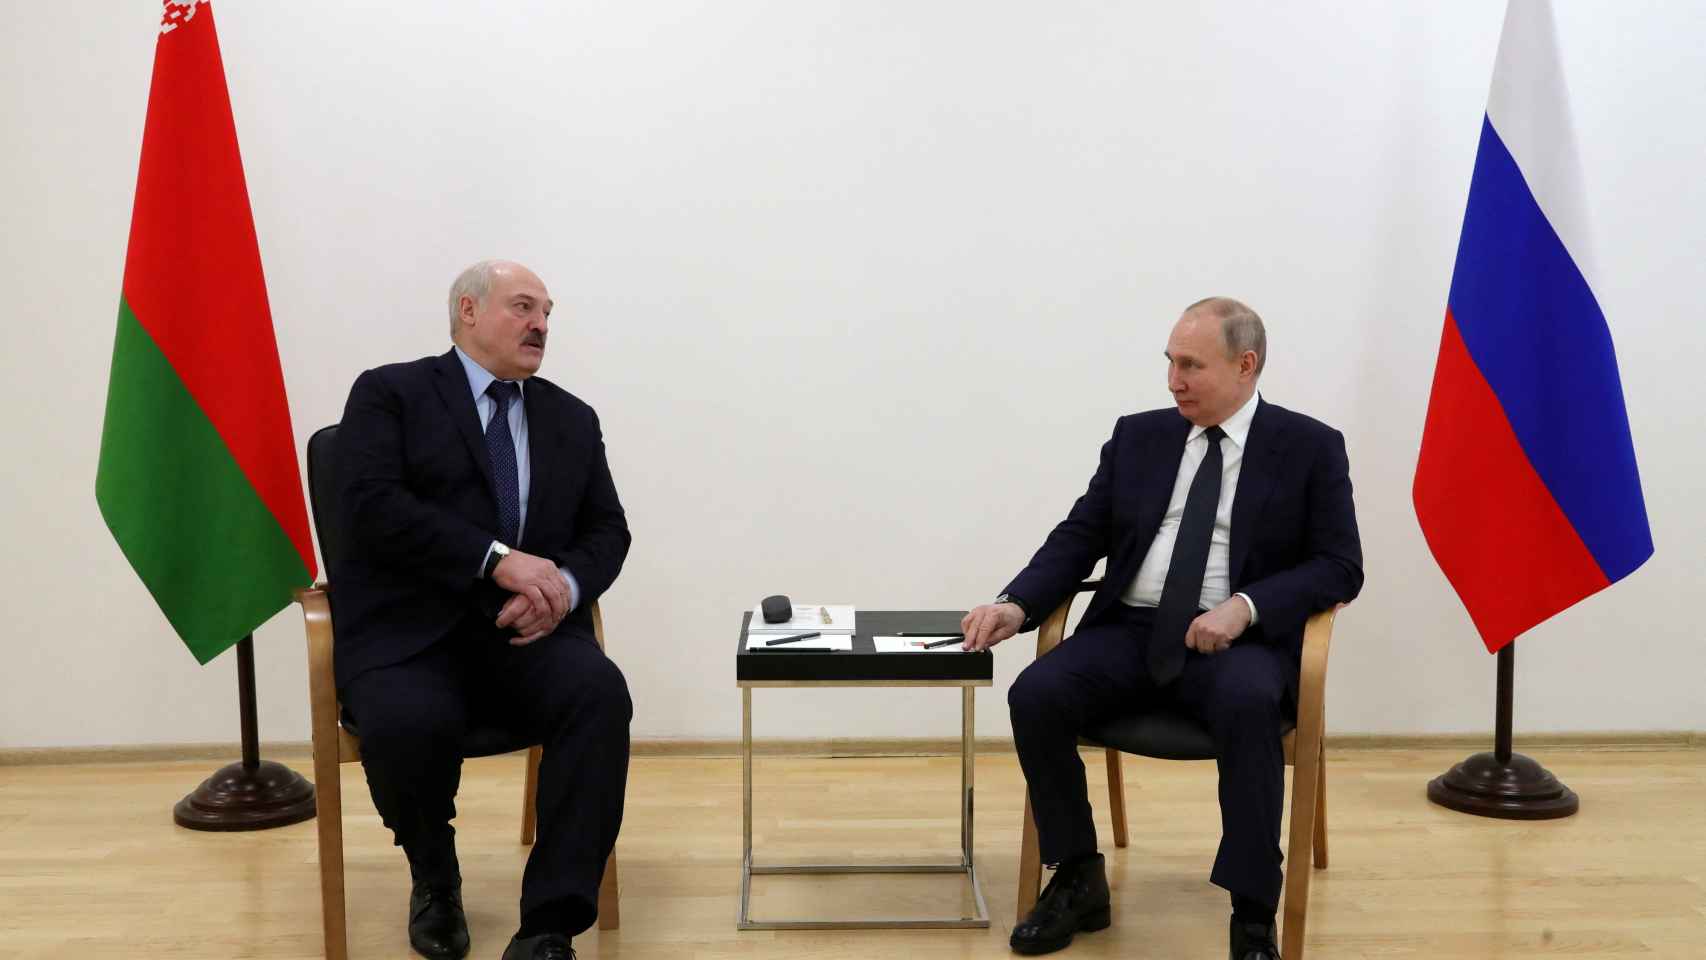 El presidente de Rusia, Vladimir Putin, junto a su homólogo bielorruso Alexander Lukashenko durante la visita al cosmódromo ruso.